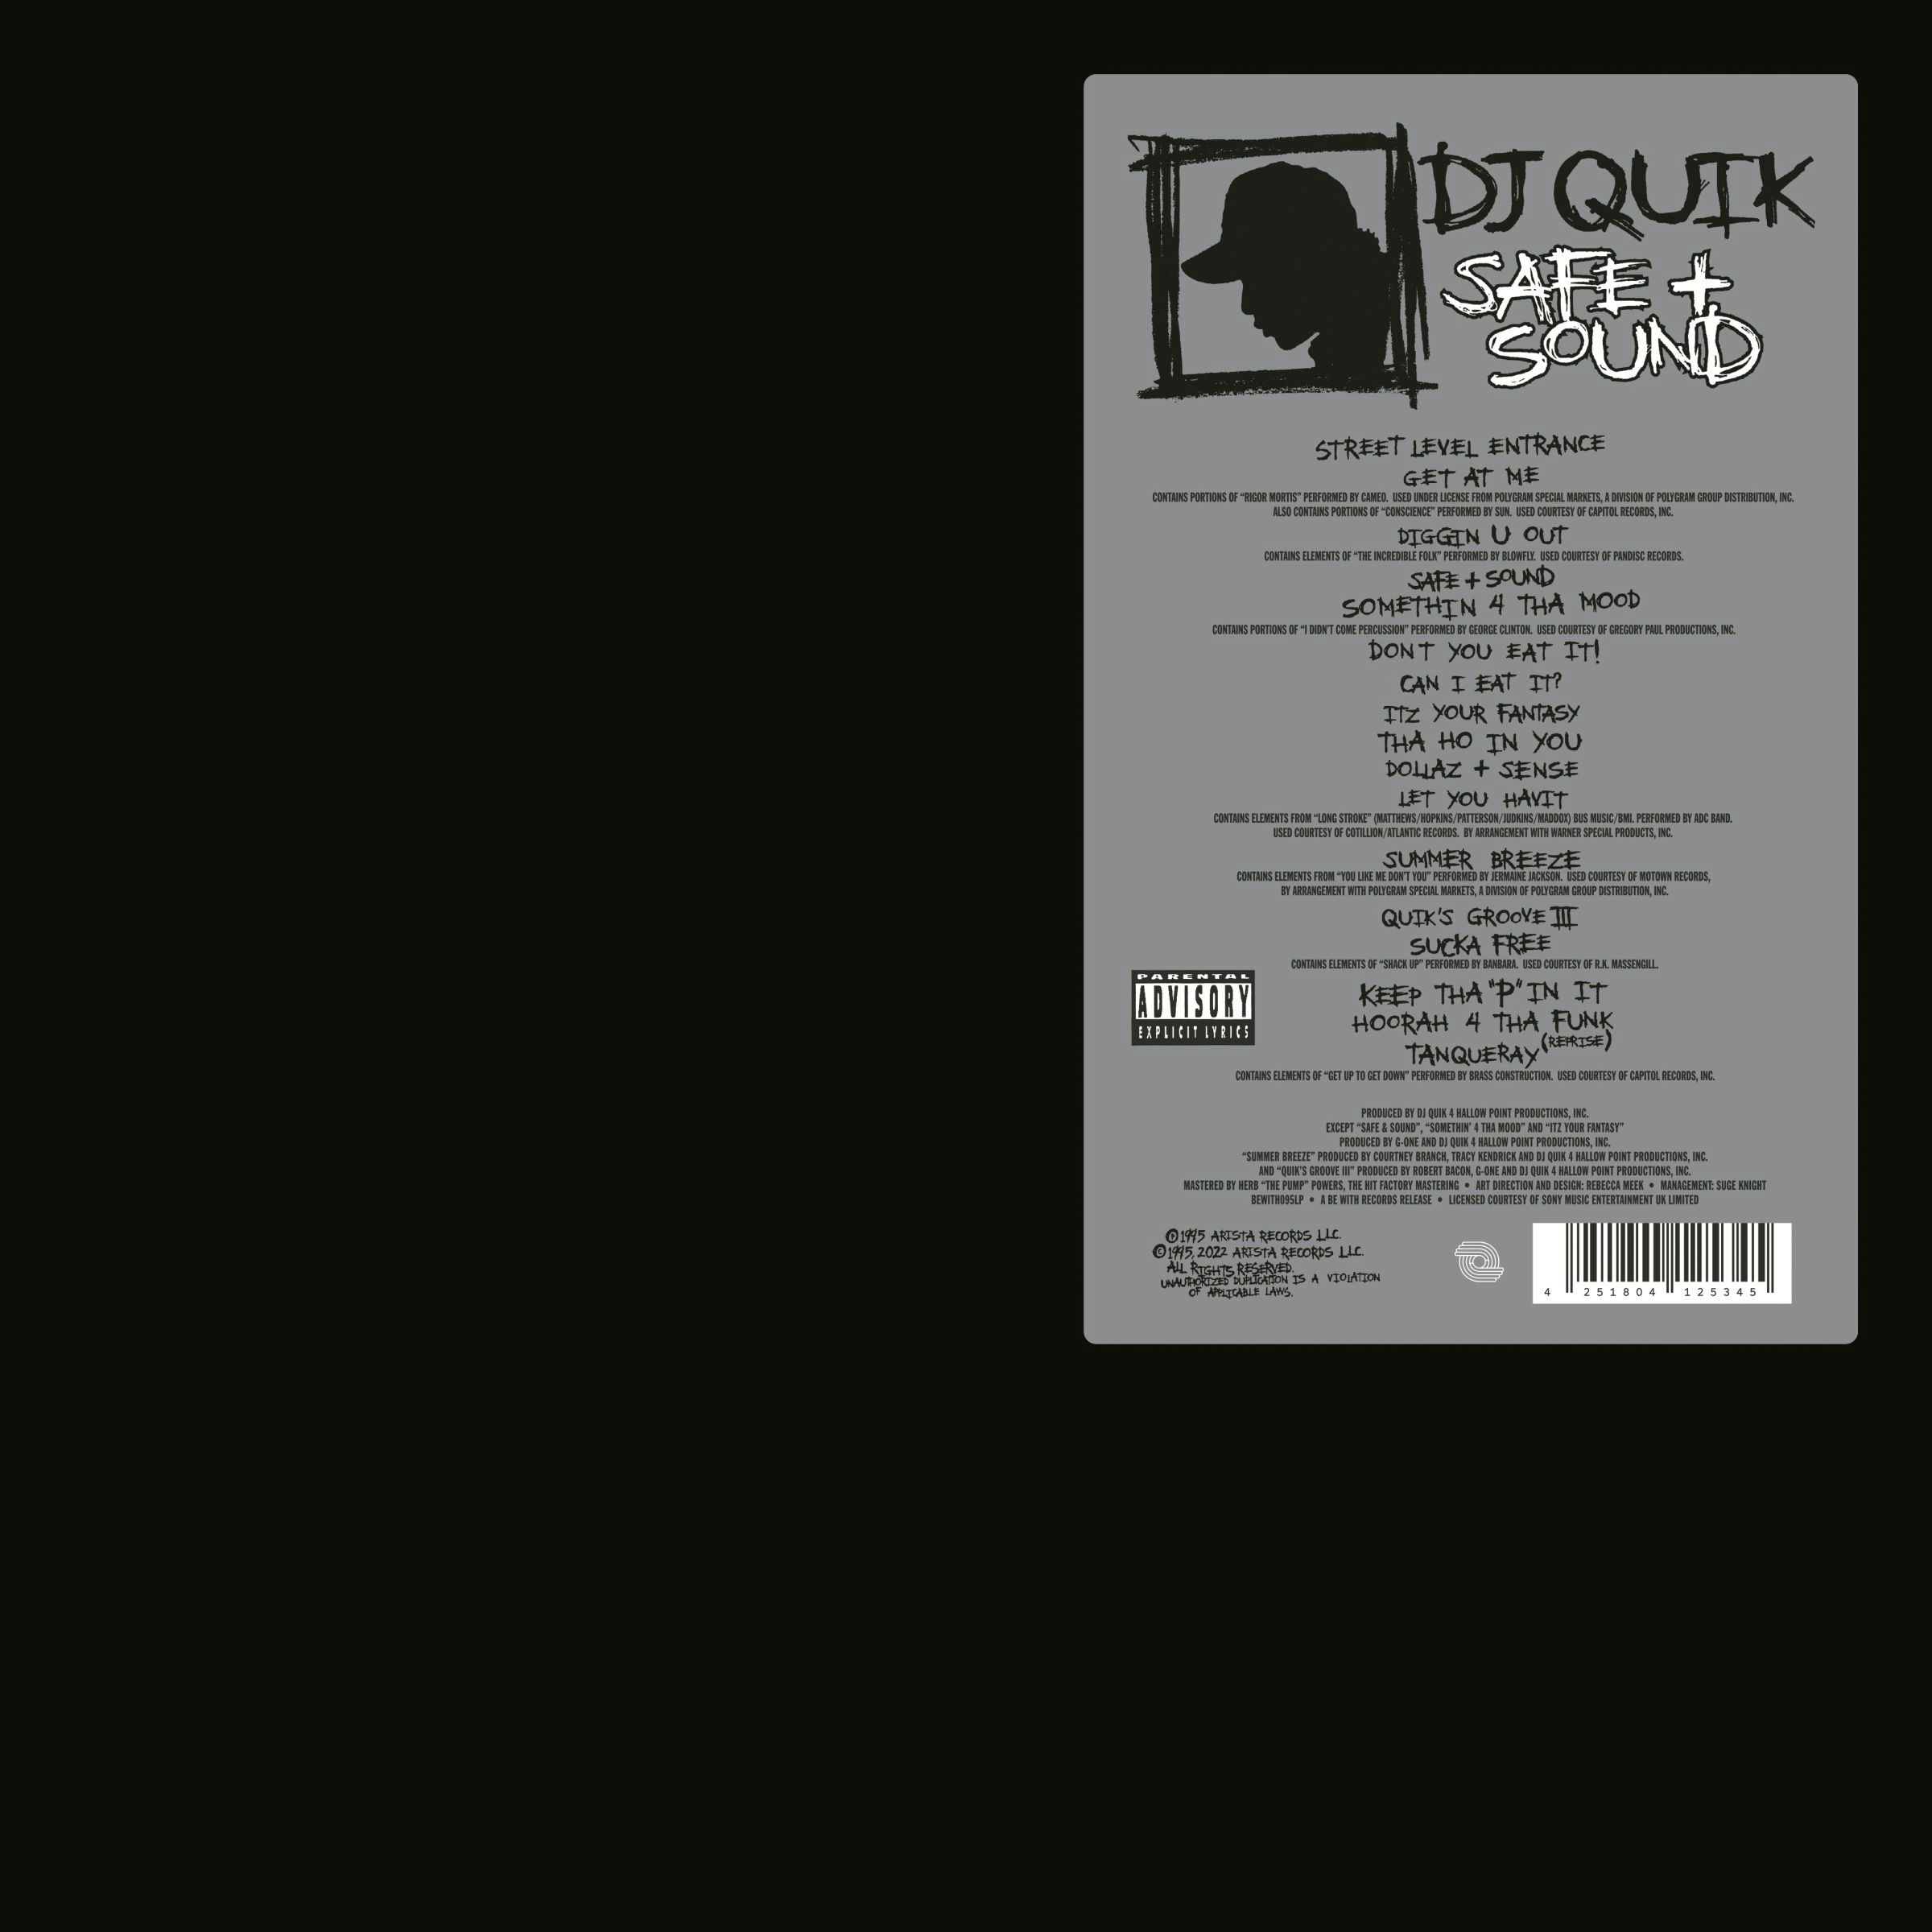 Album artwork for Safe And Sound by DJ Quik